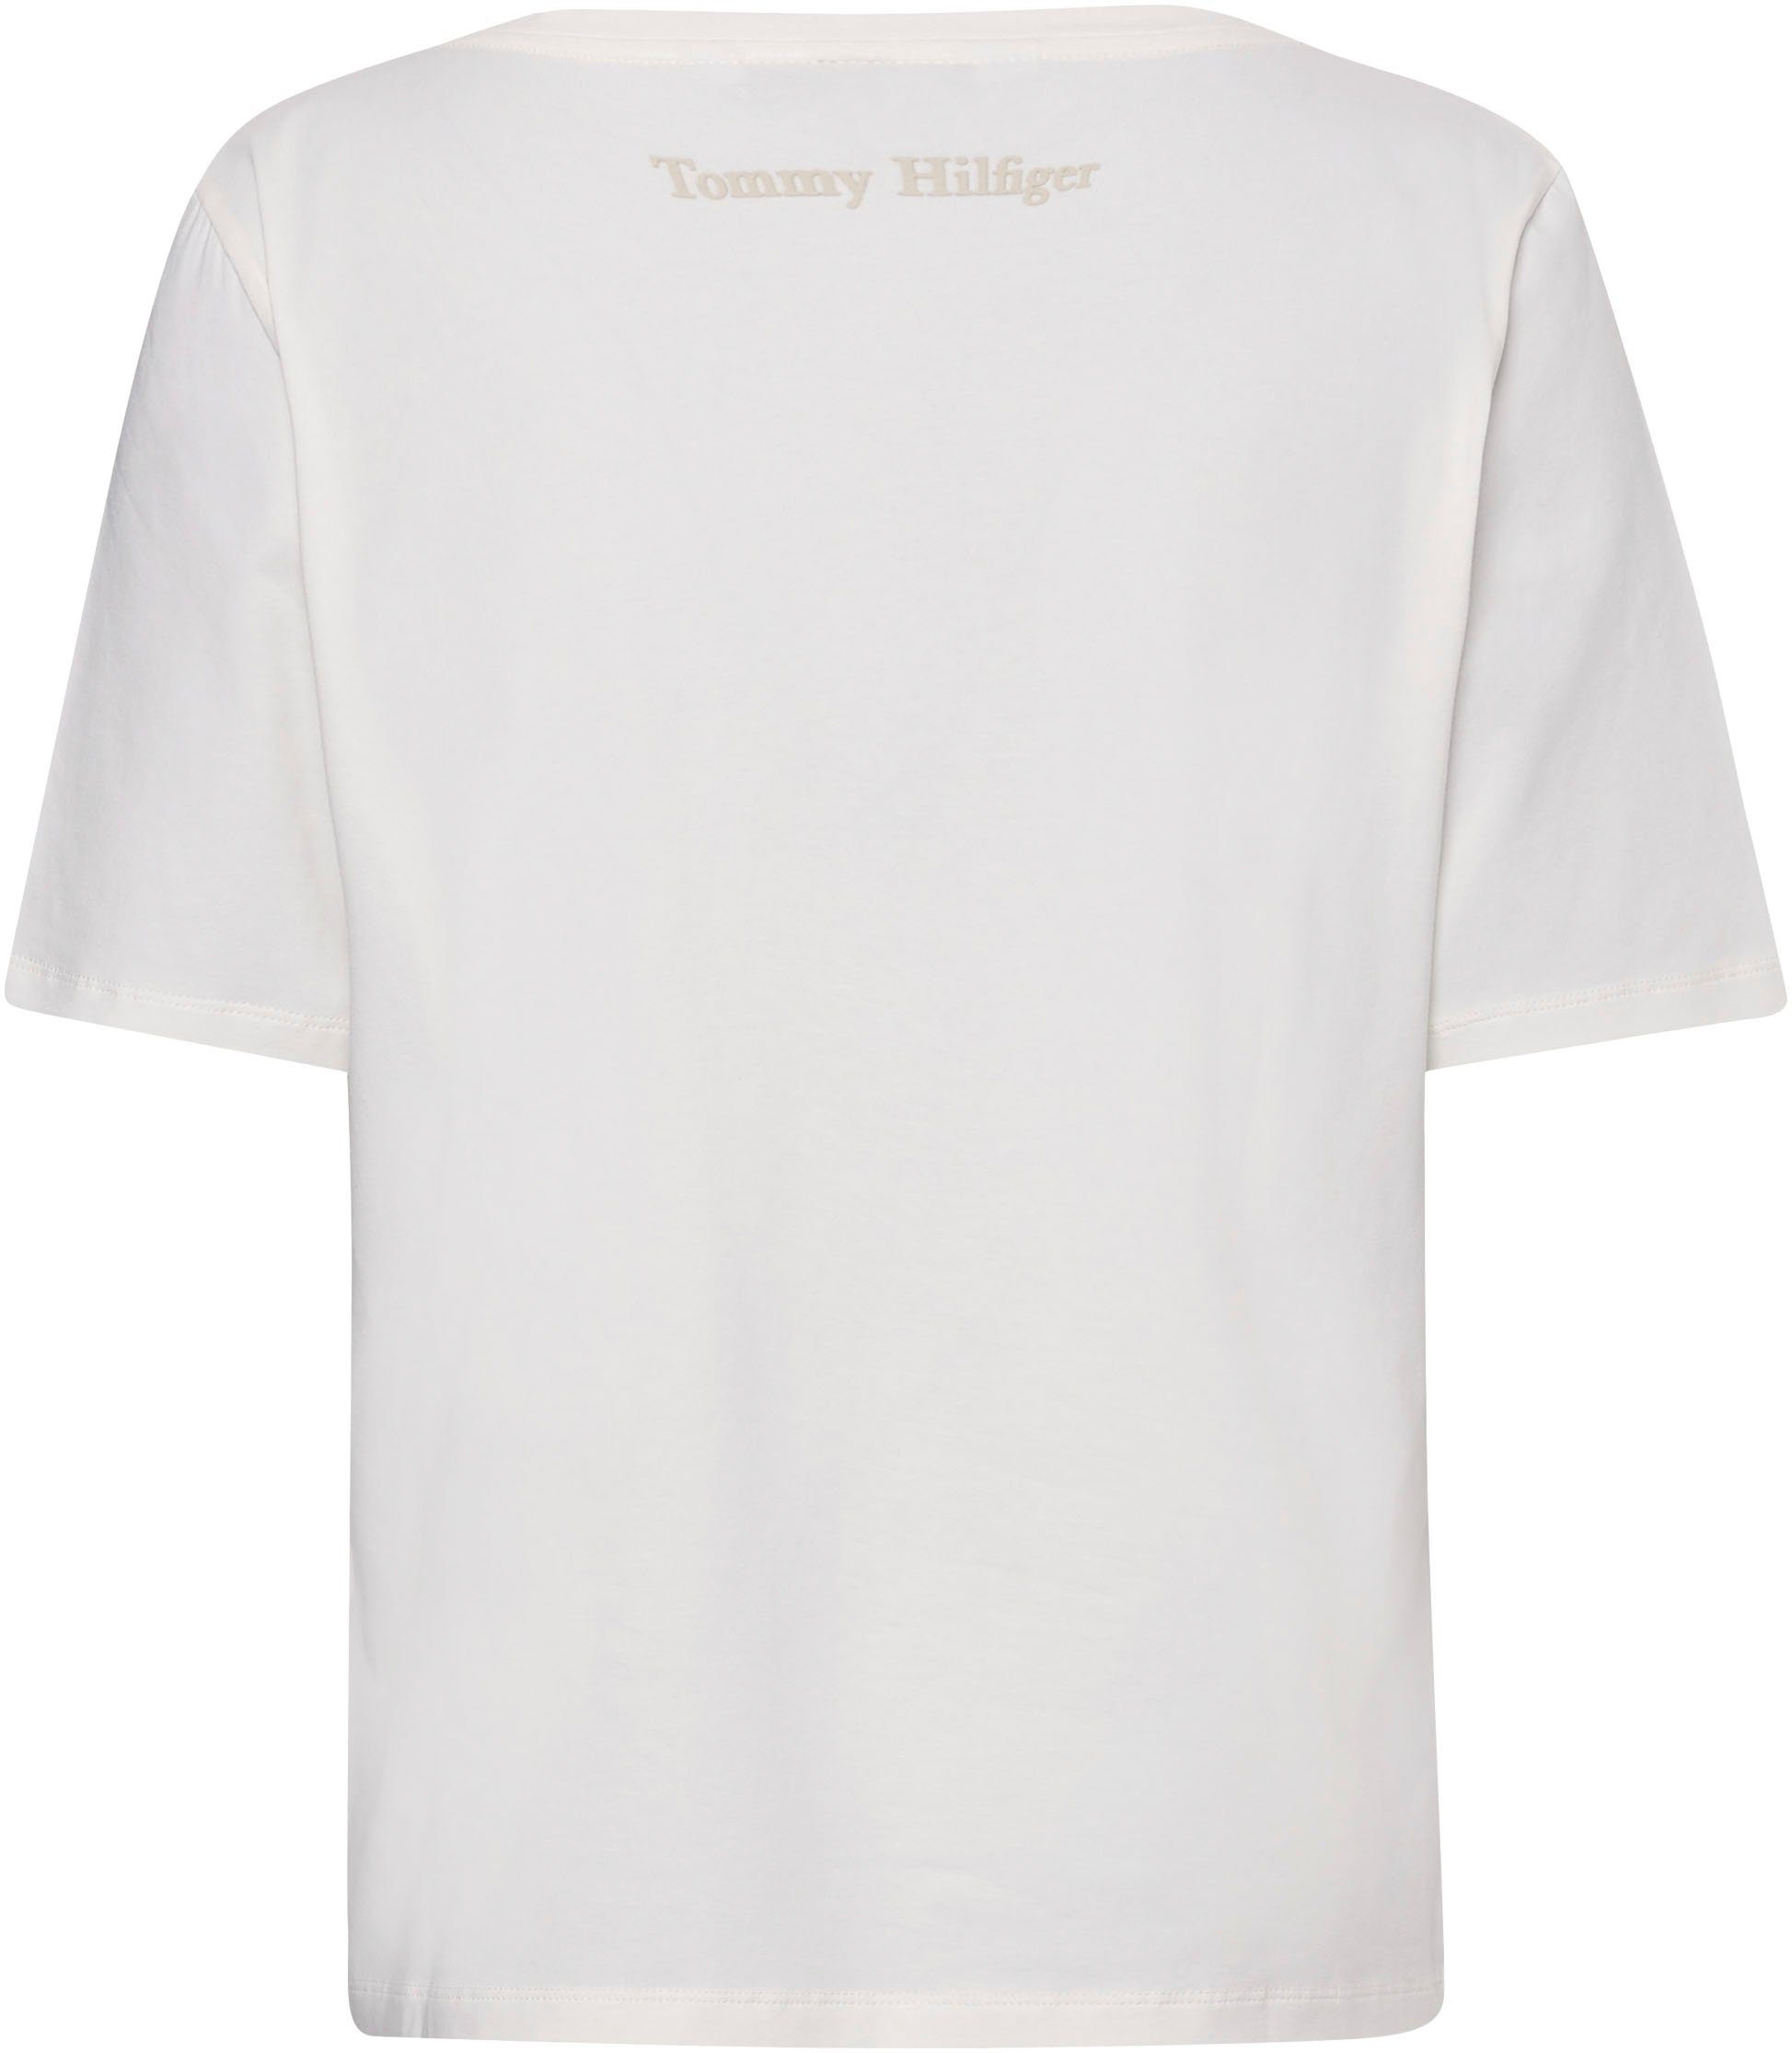 Tommy Hilfiger T-Shirt Markenlabel ecru mit